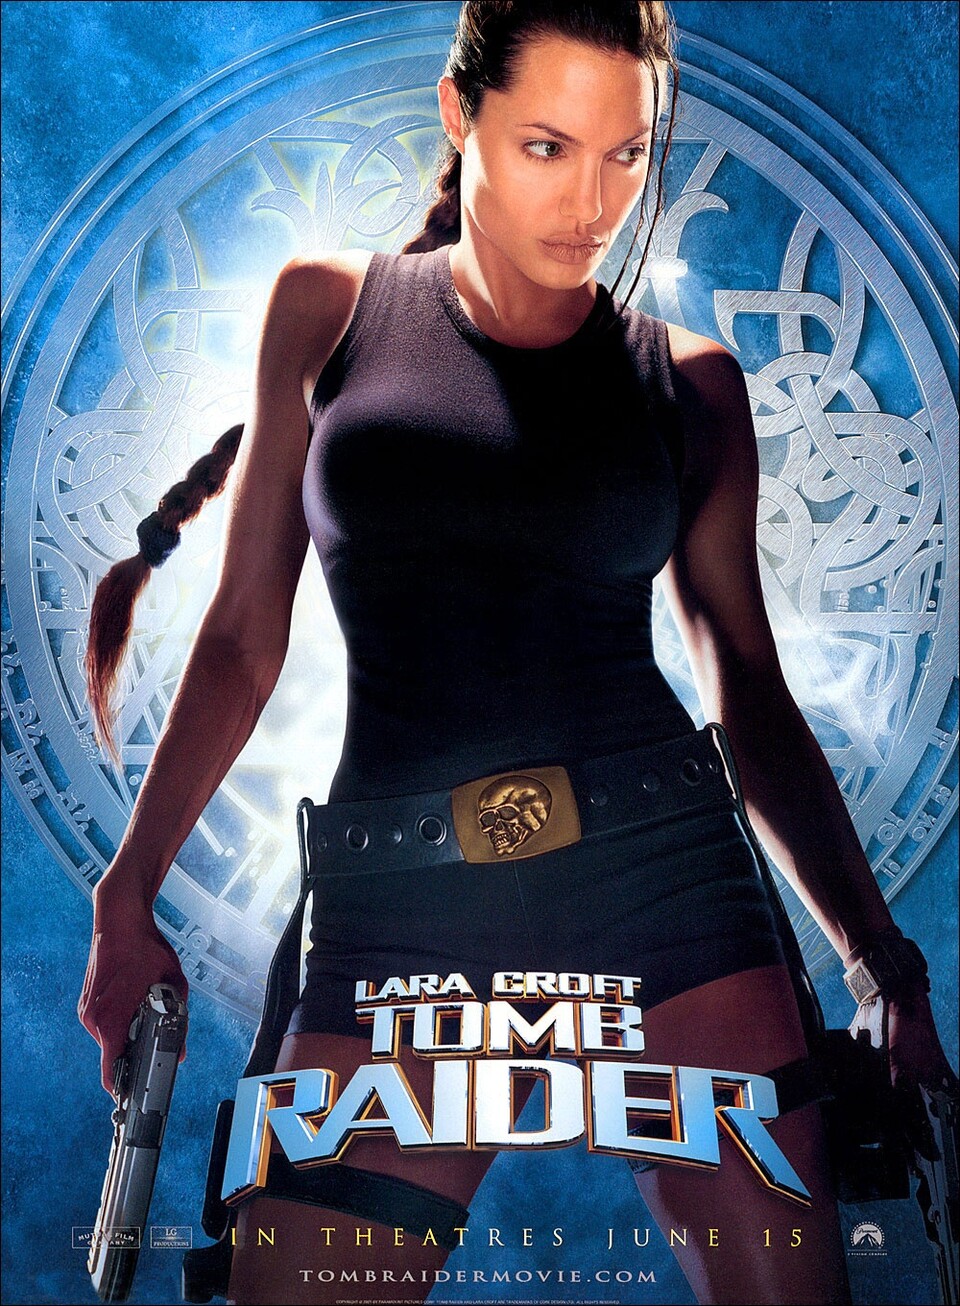 Die beiden Tomb-Raider-Spielfilme mit Angelina Jolie in der Hauptrollle spielten weltweit 432 Millionen US-Dollar ein.